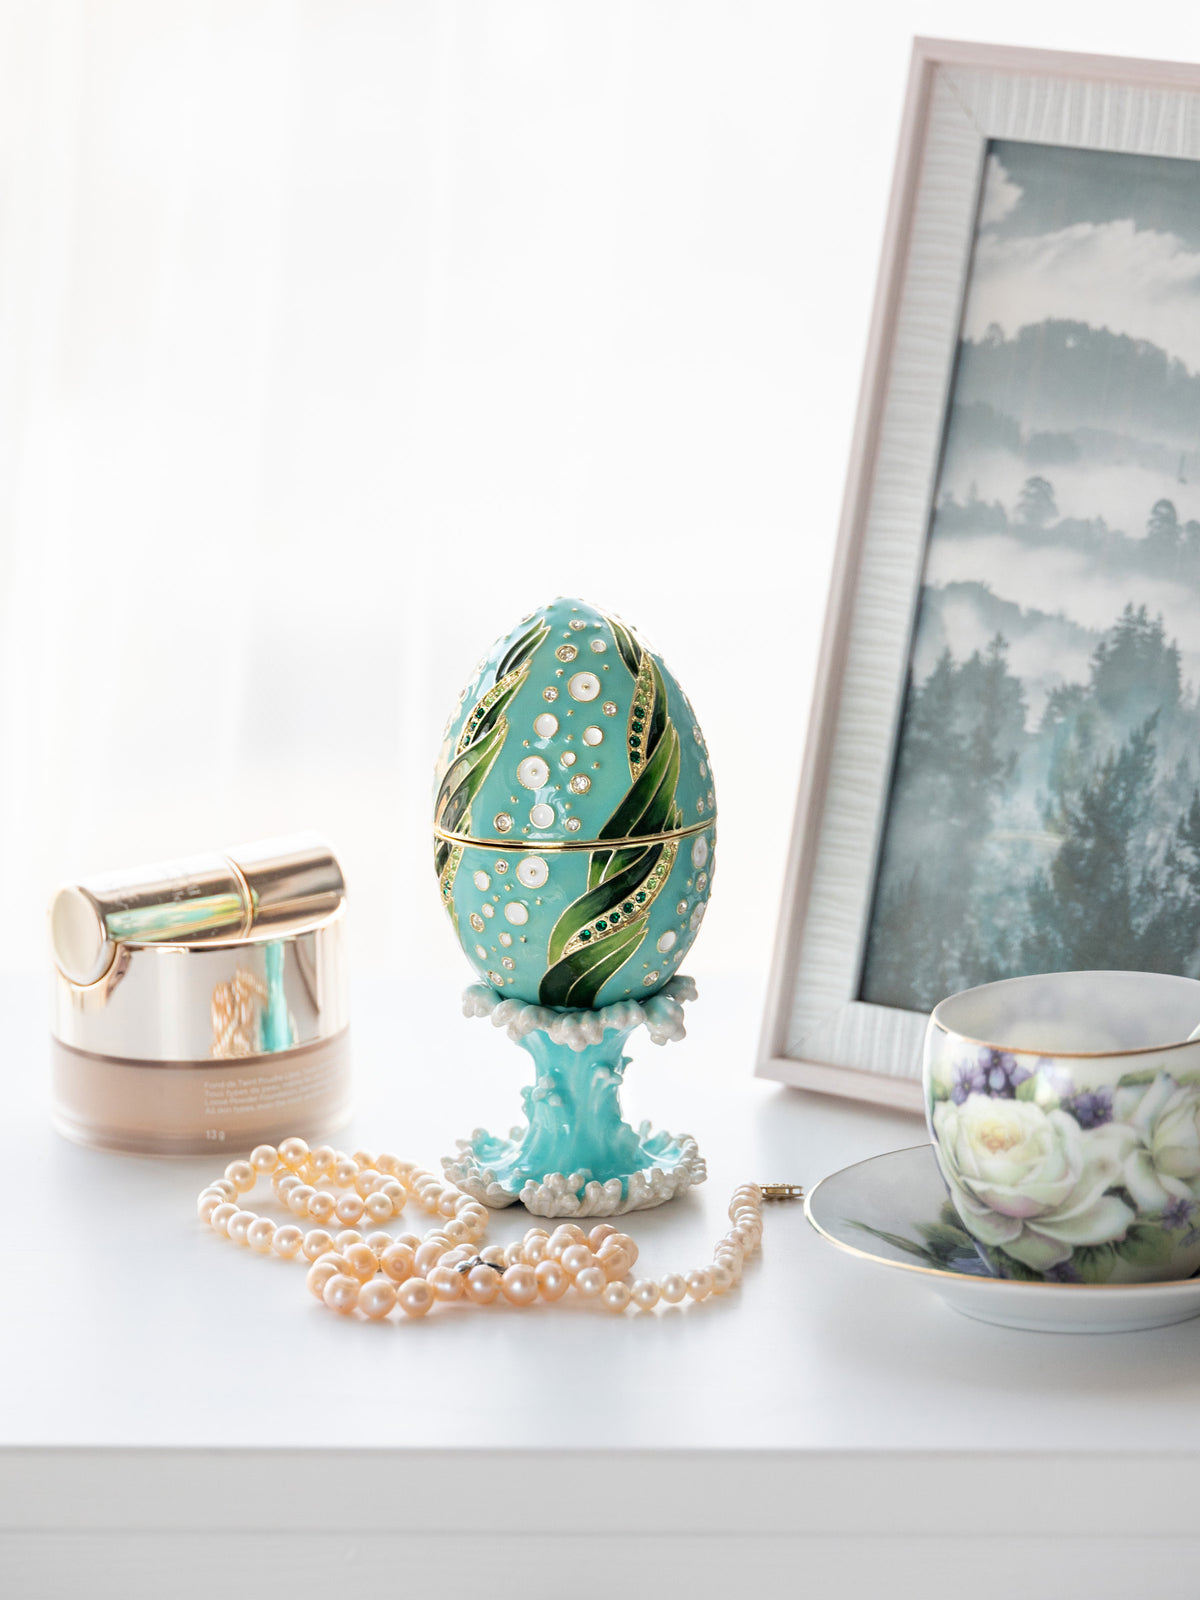 Noir Fabergé Egg avec Silver Frog surprise à l'intérieur